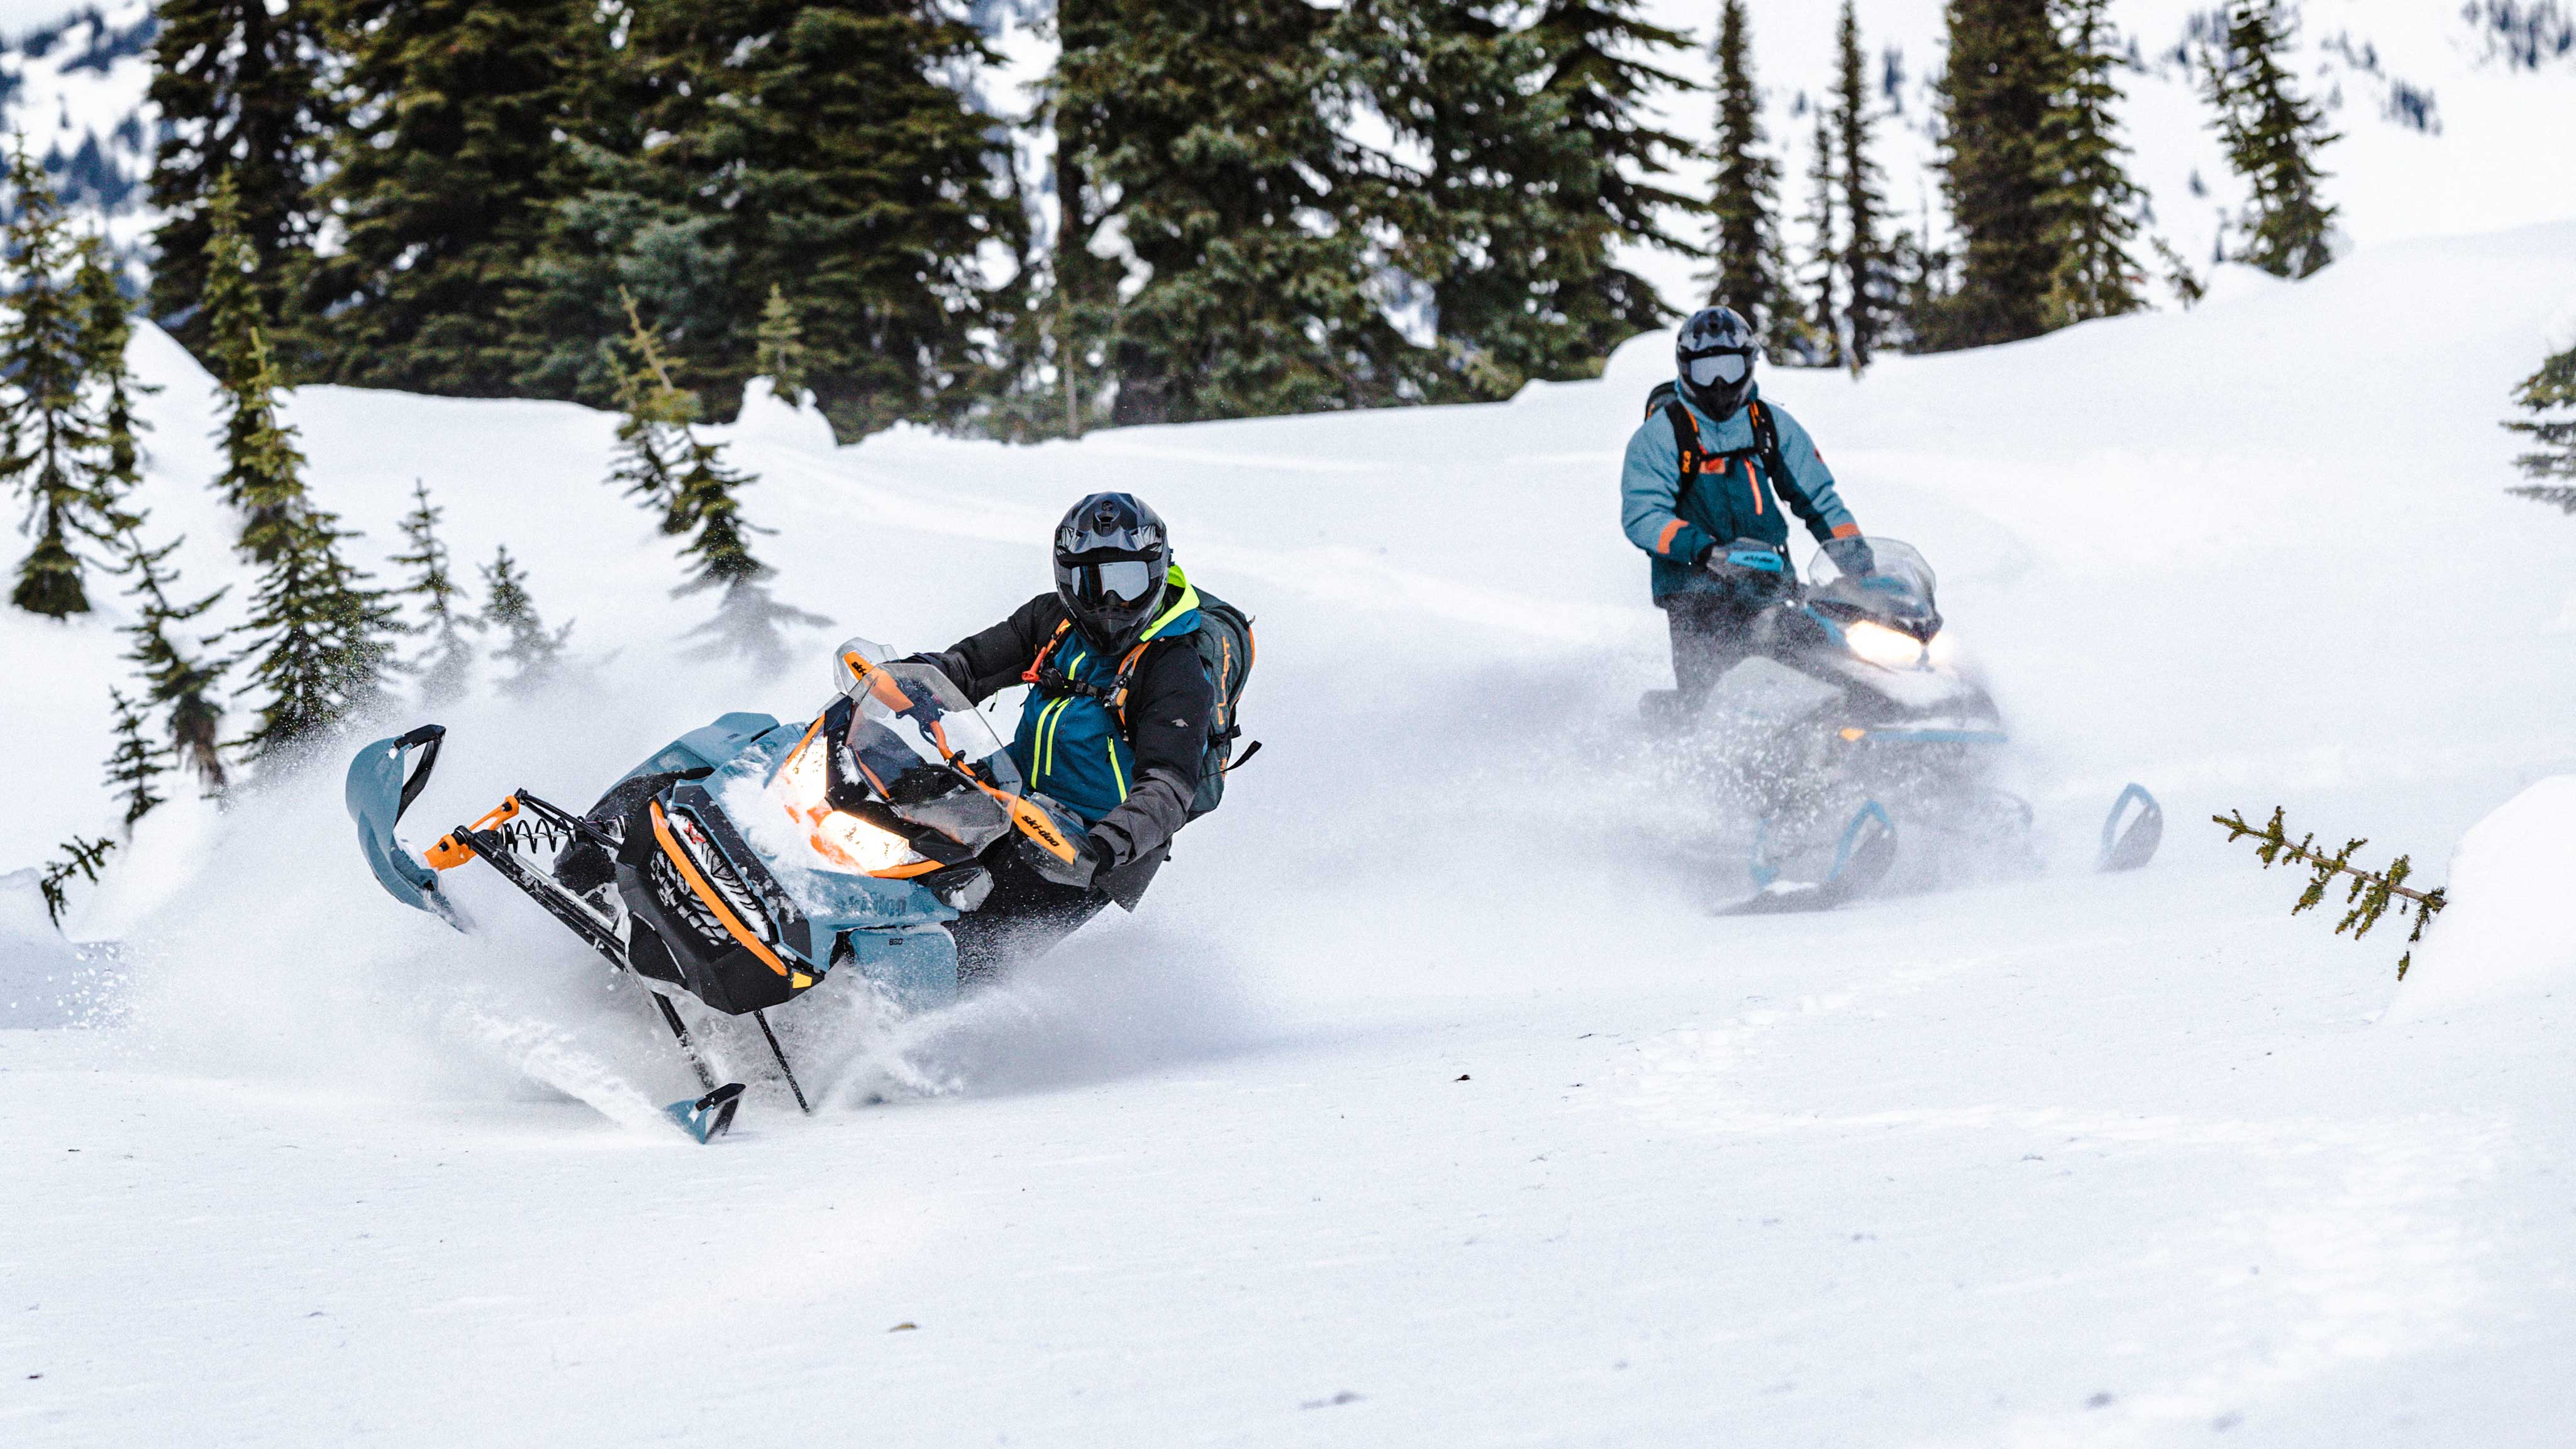 Yeni 2022 Ski-Doo Backcountry'nin tadını çıkaran 2 sürücü